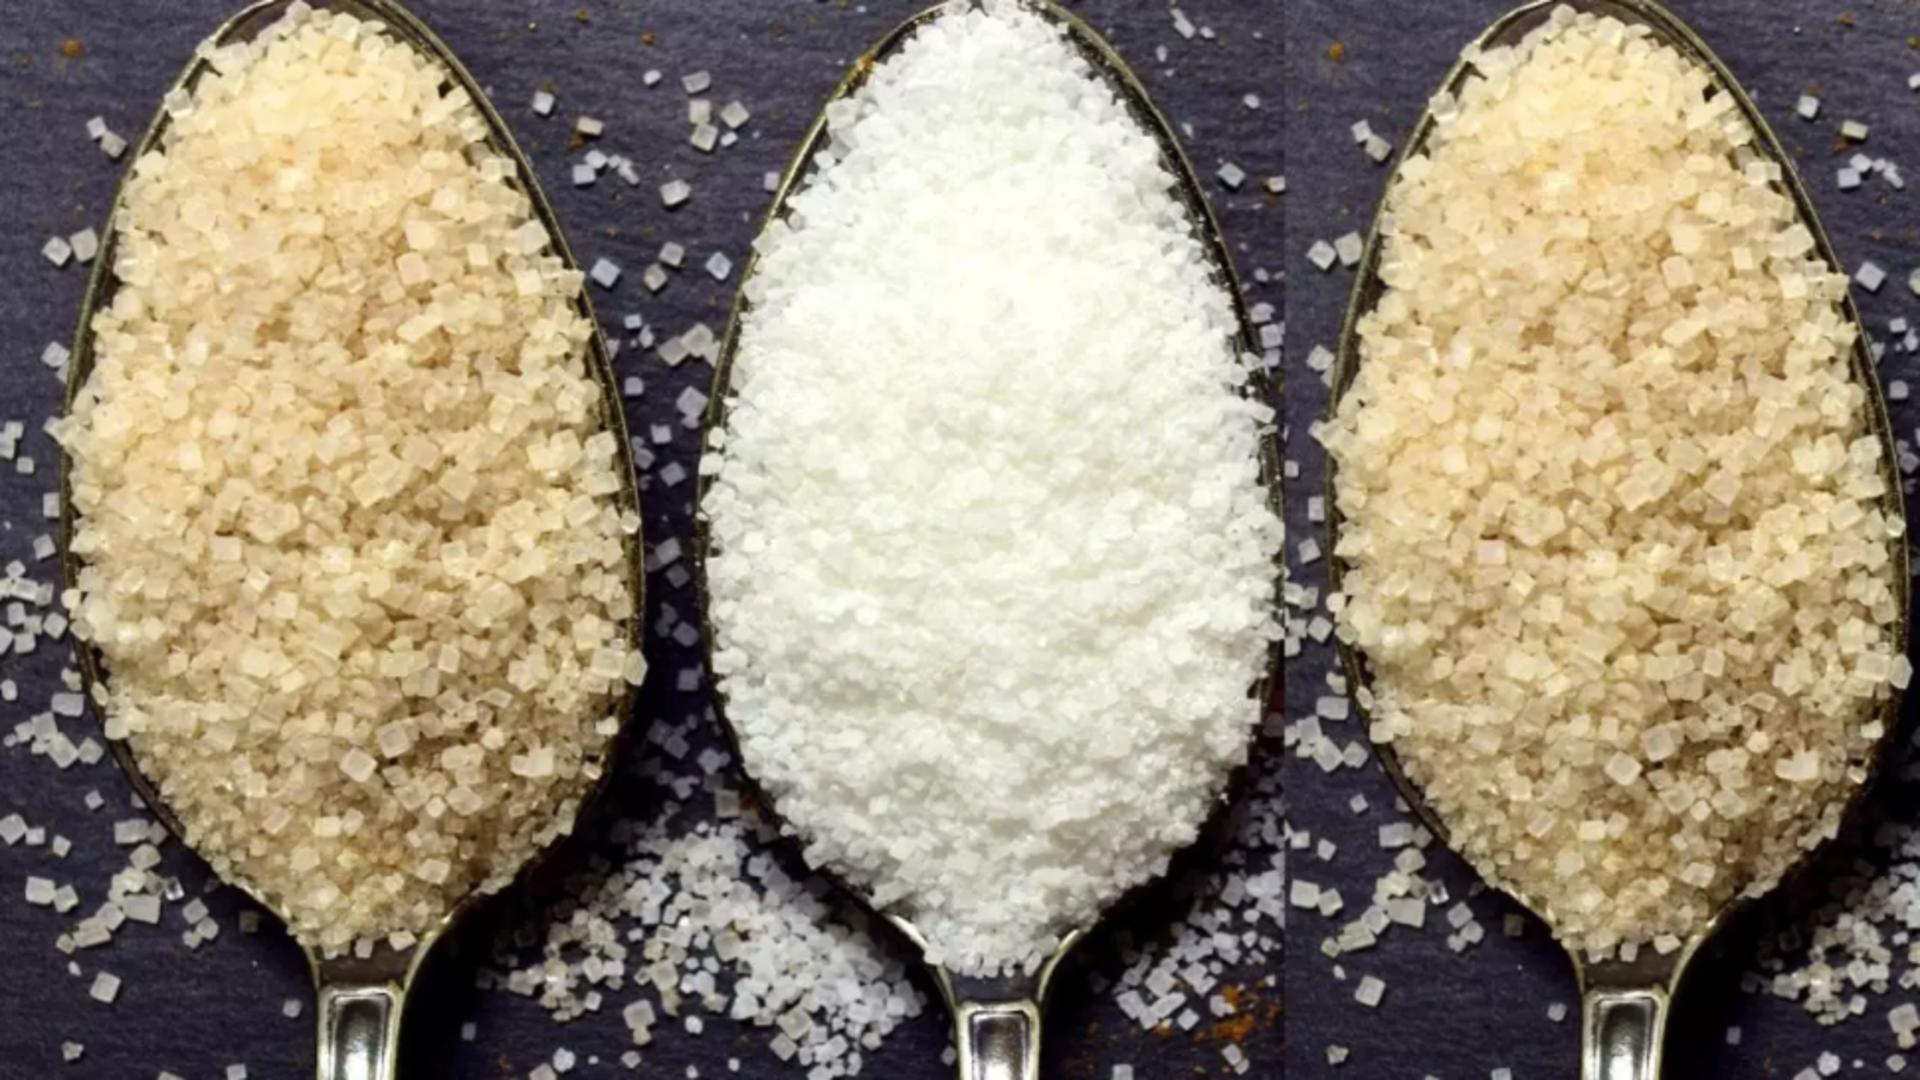 Ce tip de zahăr este mai nociv: alb, brun sau brut? Dezvăluiri surprinzătoare, la o analiză amănunțită